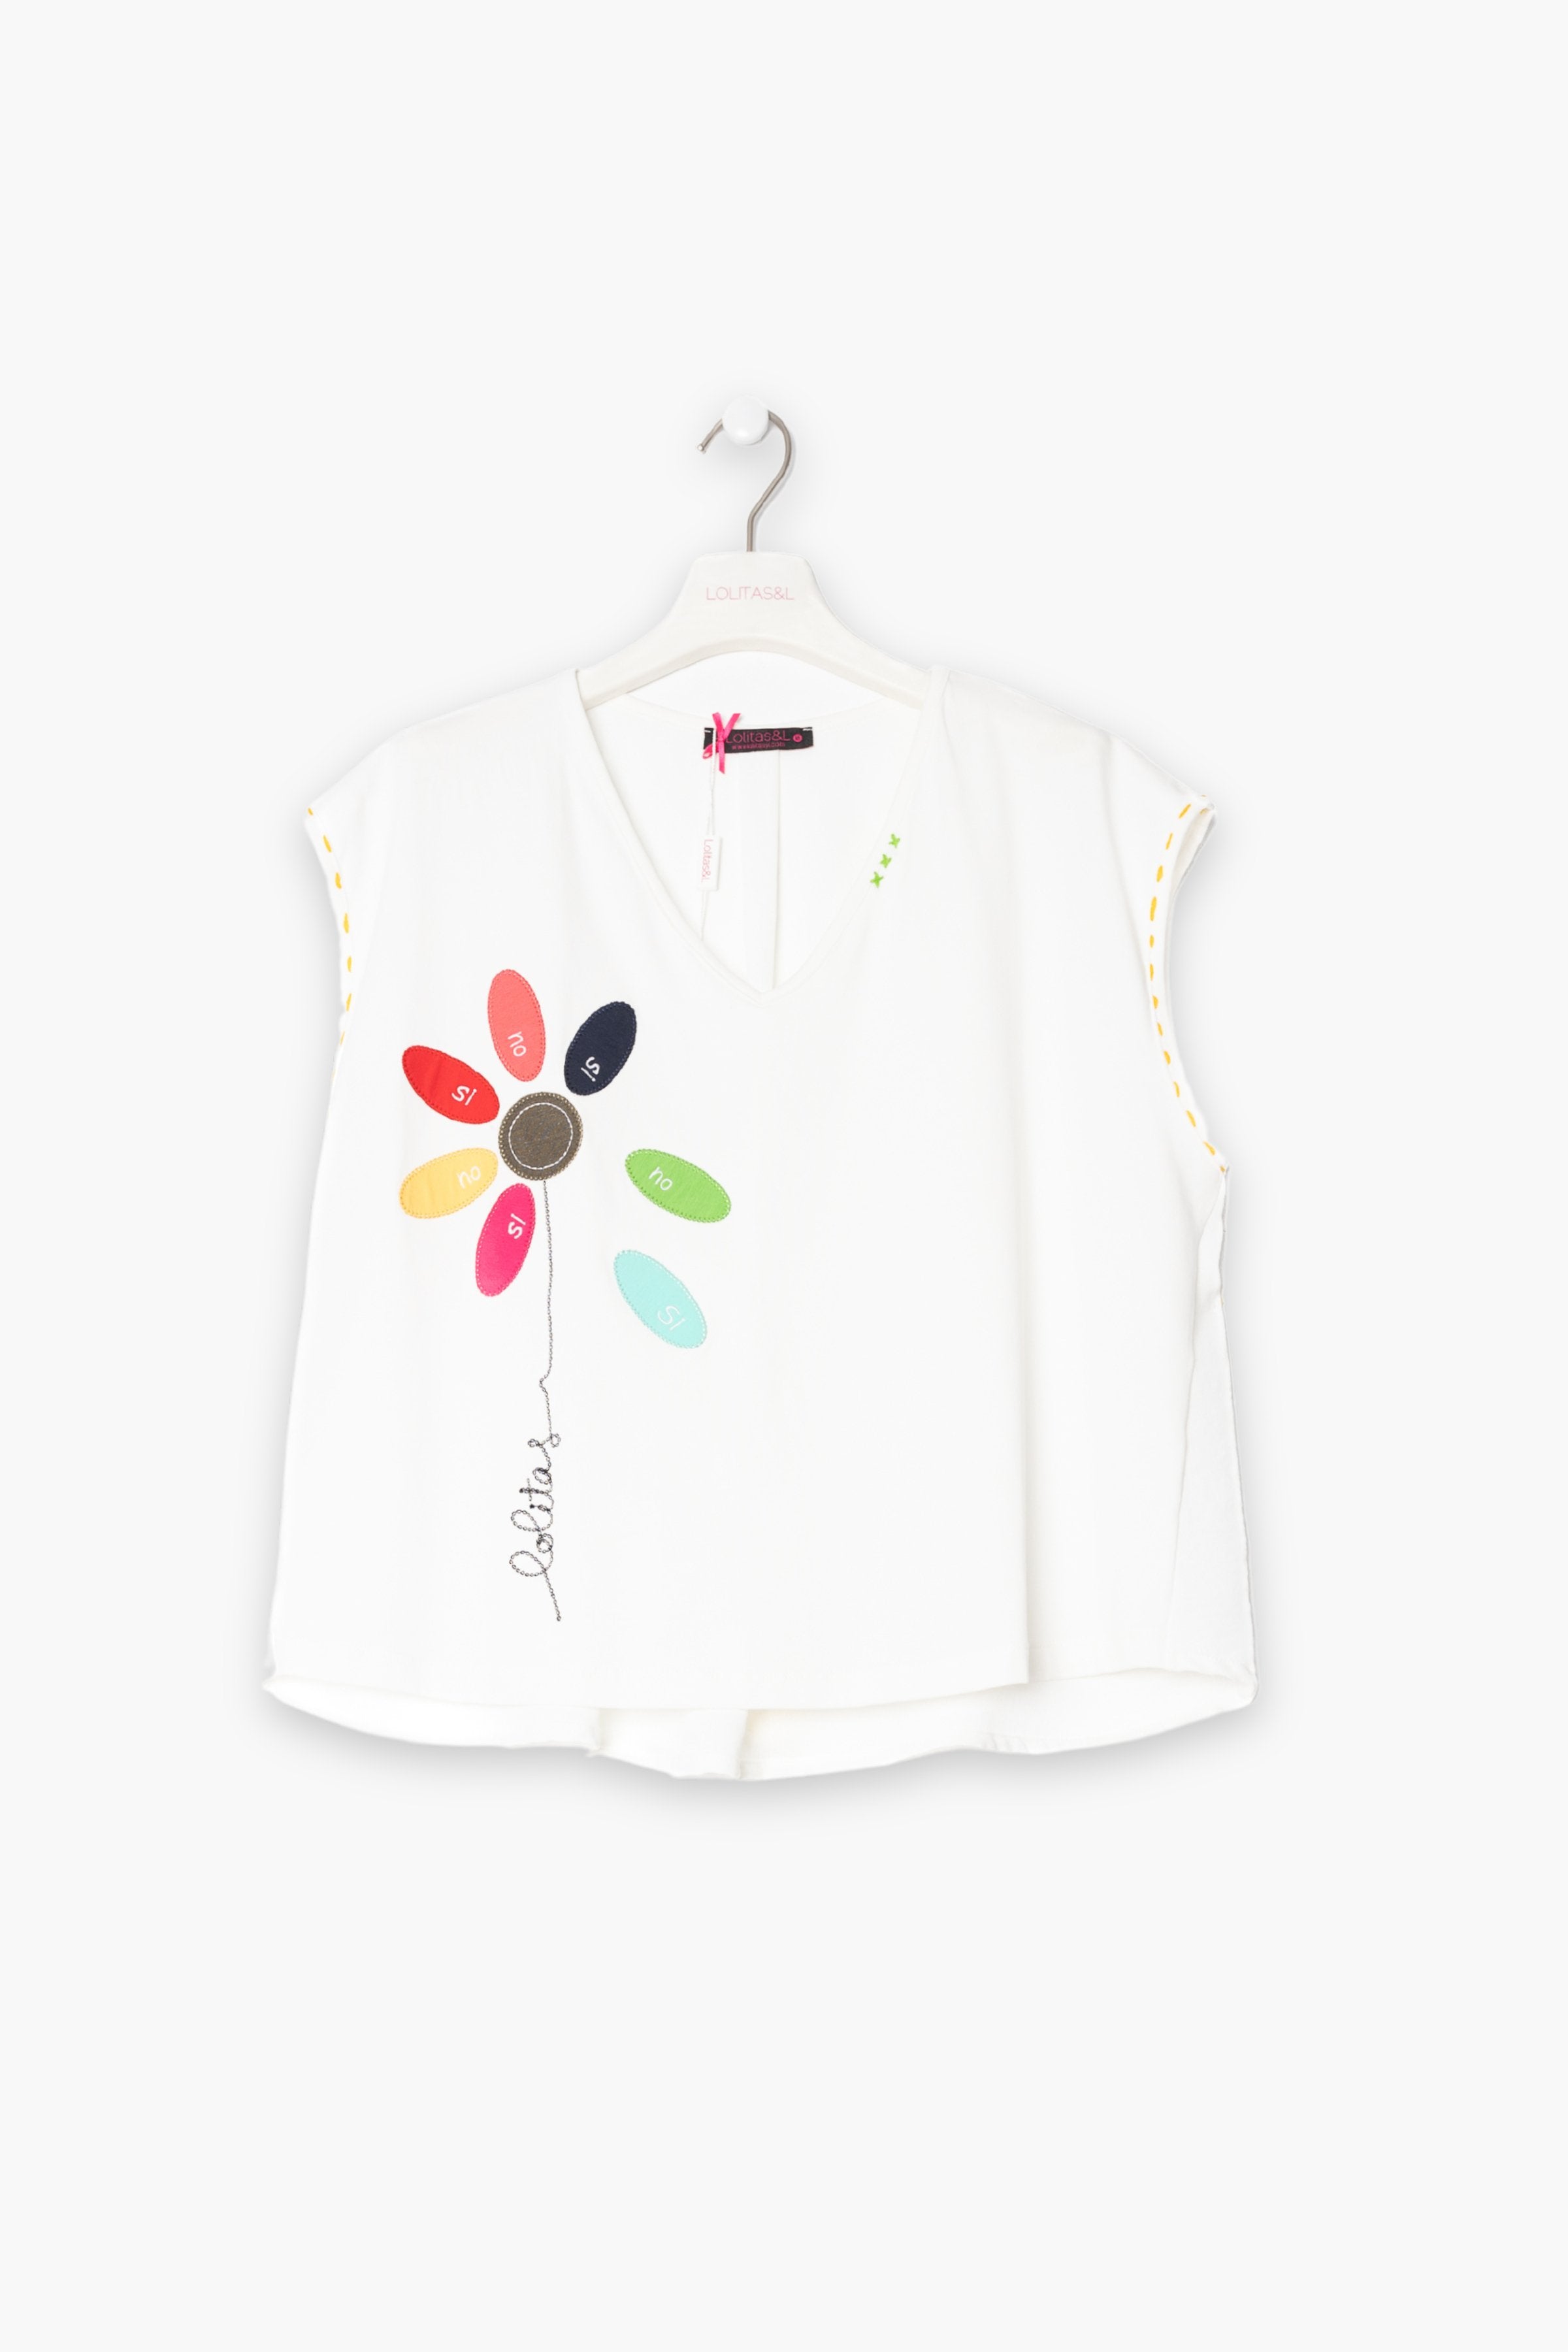 Camiseta blanca bordado flor multicolor si no LolitasyL - lolitasyl.com